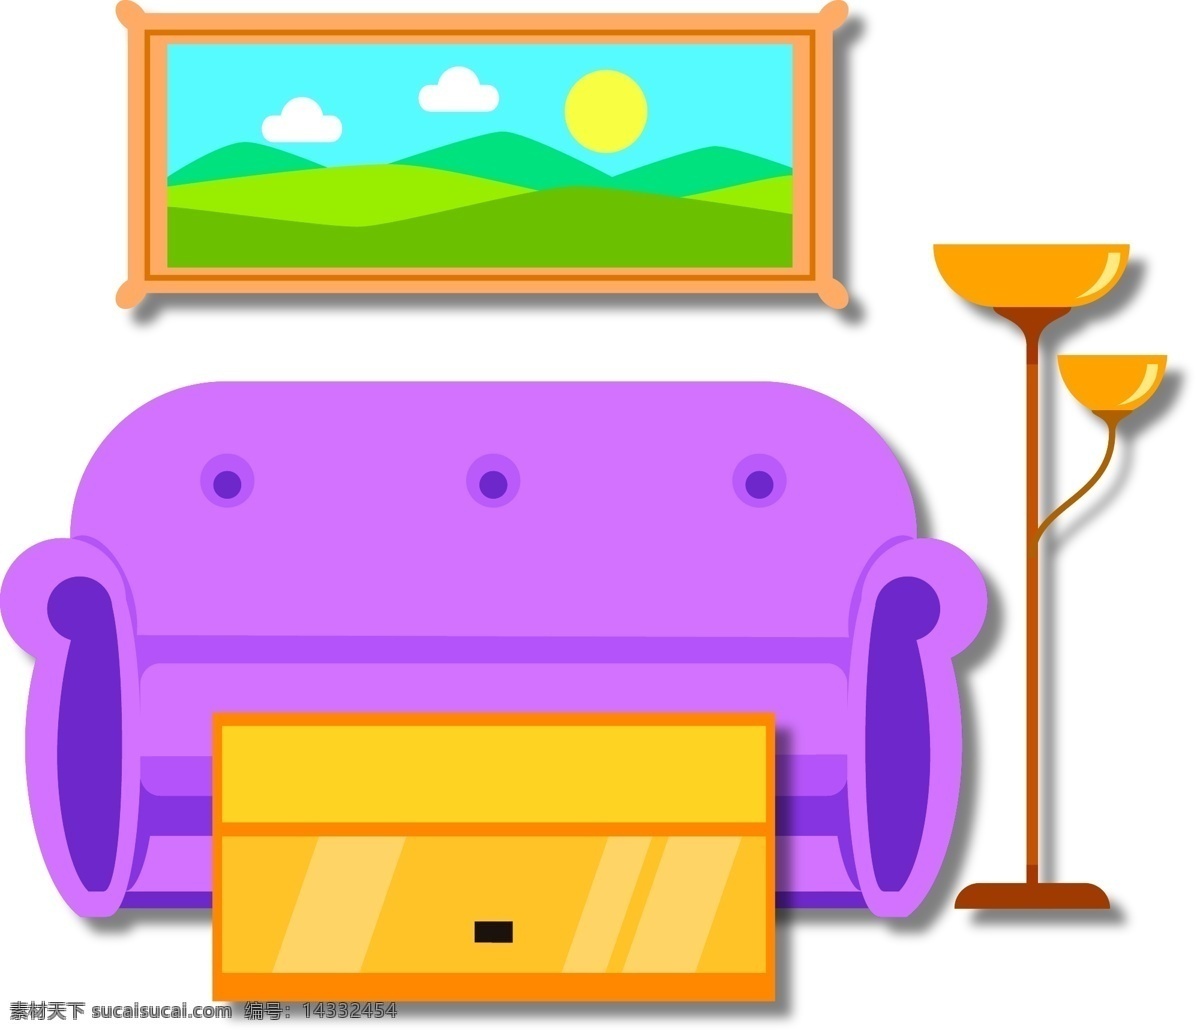 矢量 手绘 卡通 家具 沙发 落地灯 紫色 黄色 茶几 画框 褐色 灯光 皮沙发 木头桌子